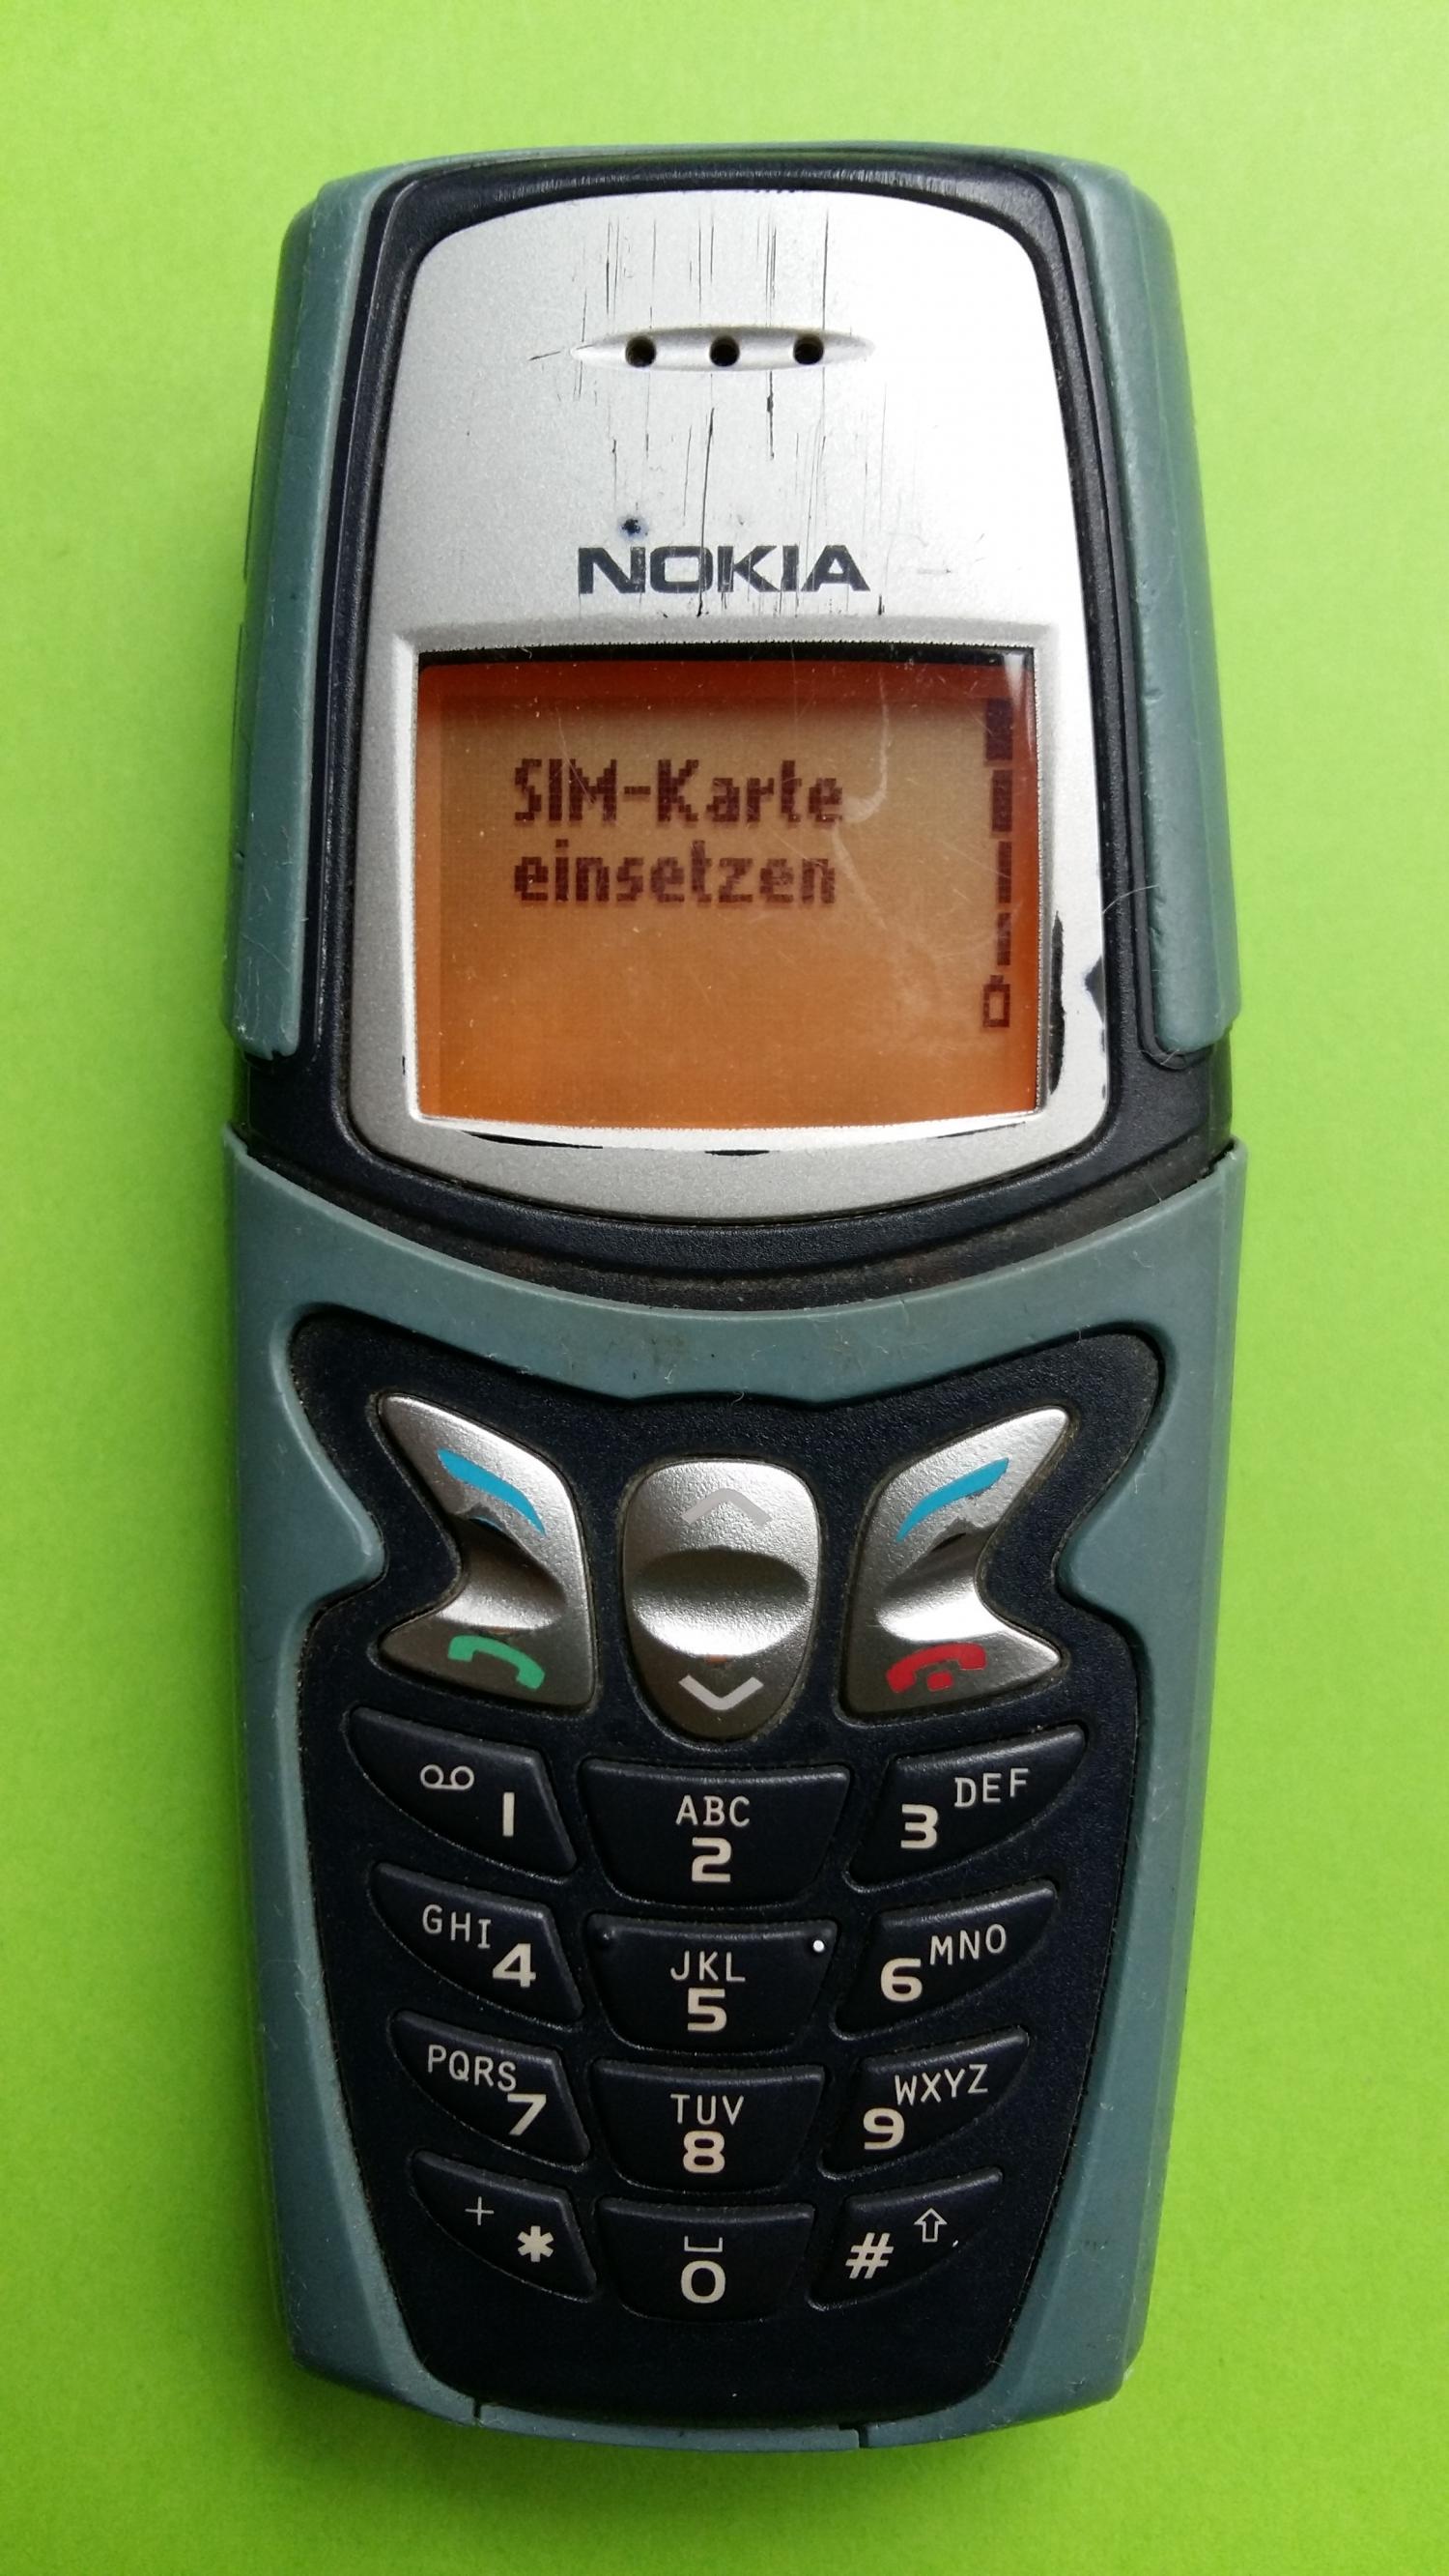 image-7307004-Nokia 5210 (4)1.jpg